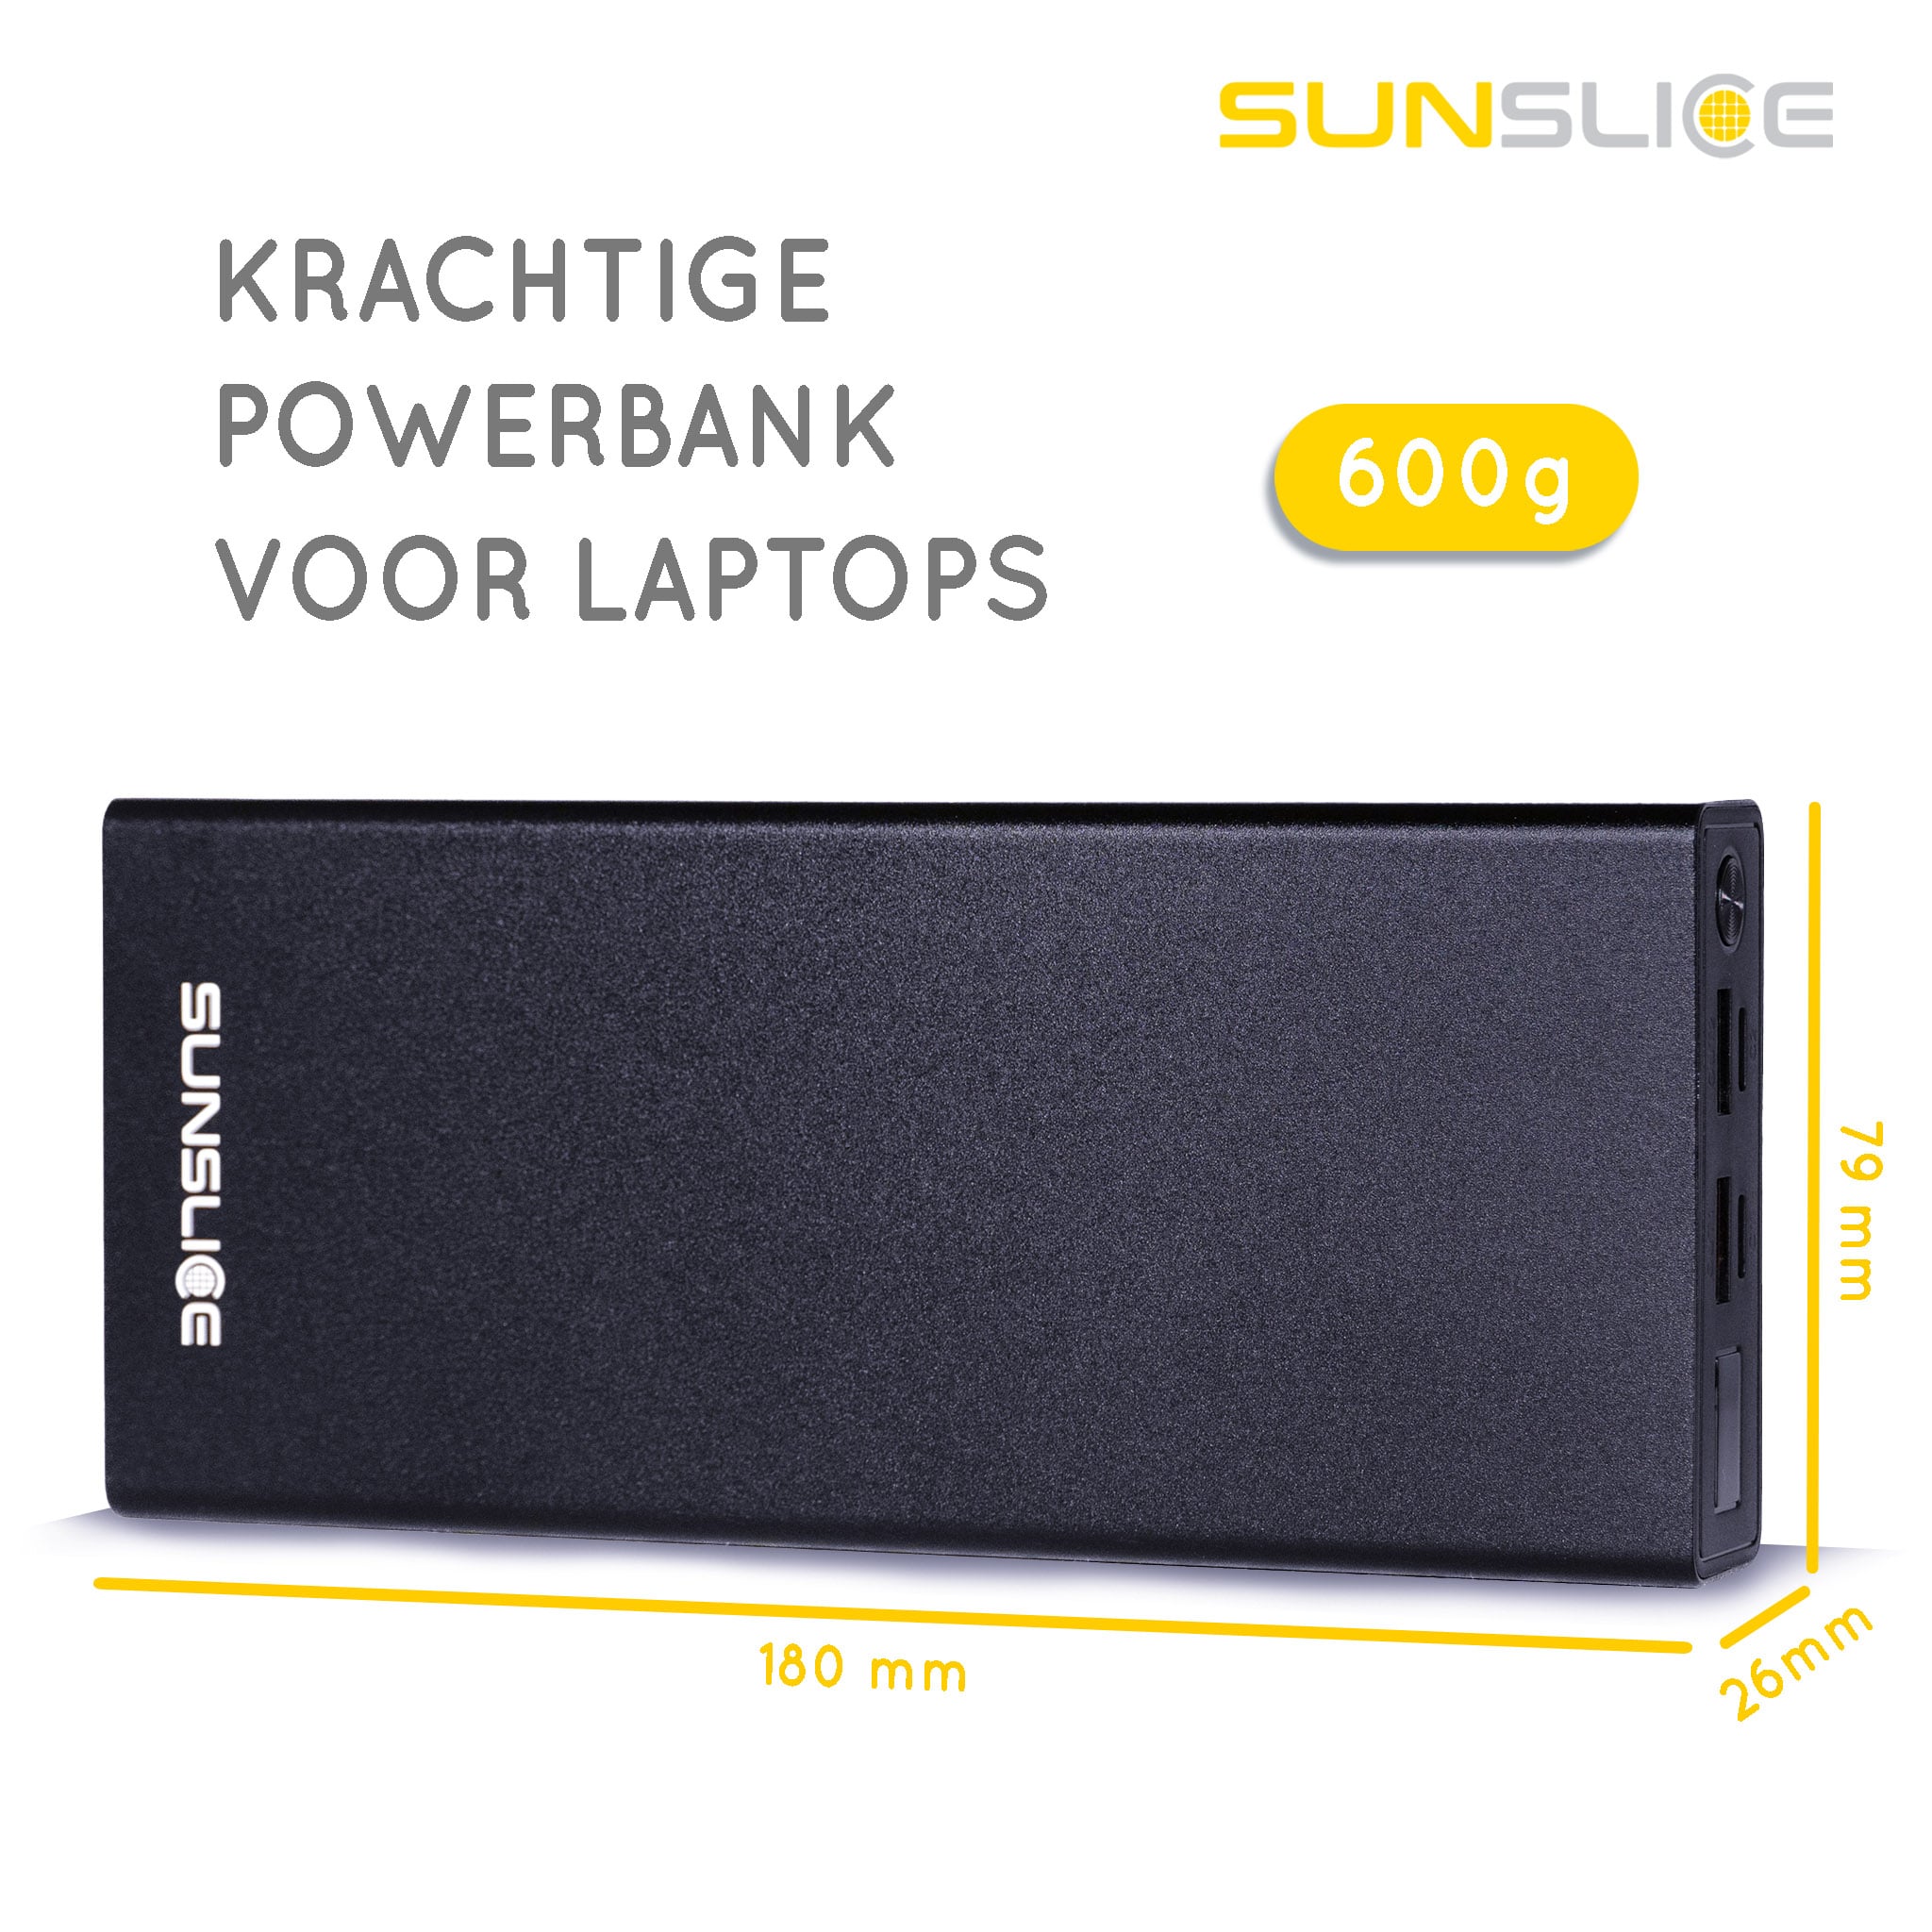 Powerbank Gravity 27 maatinformatie: 180 mm, 79 mm, 26 mm. Gewicht: 600g Krachtige powerbank voor laptop